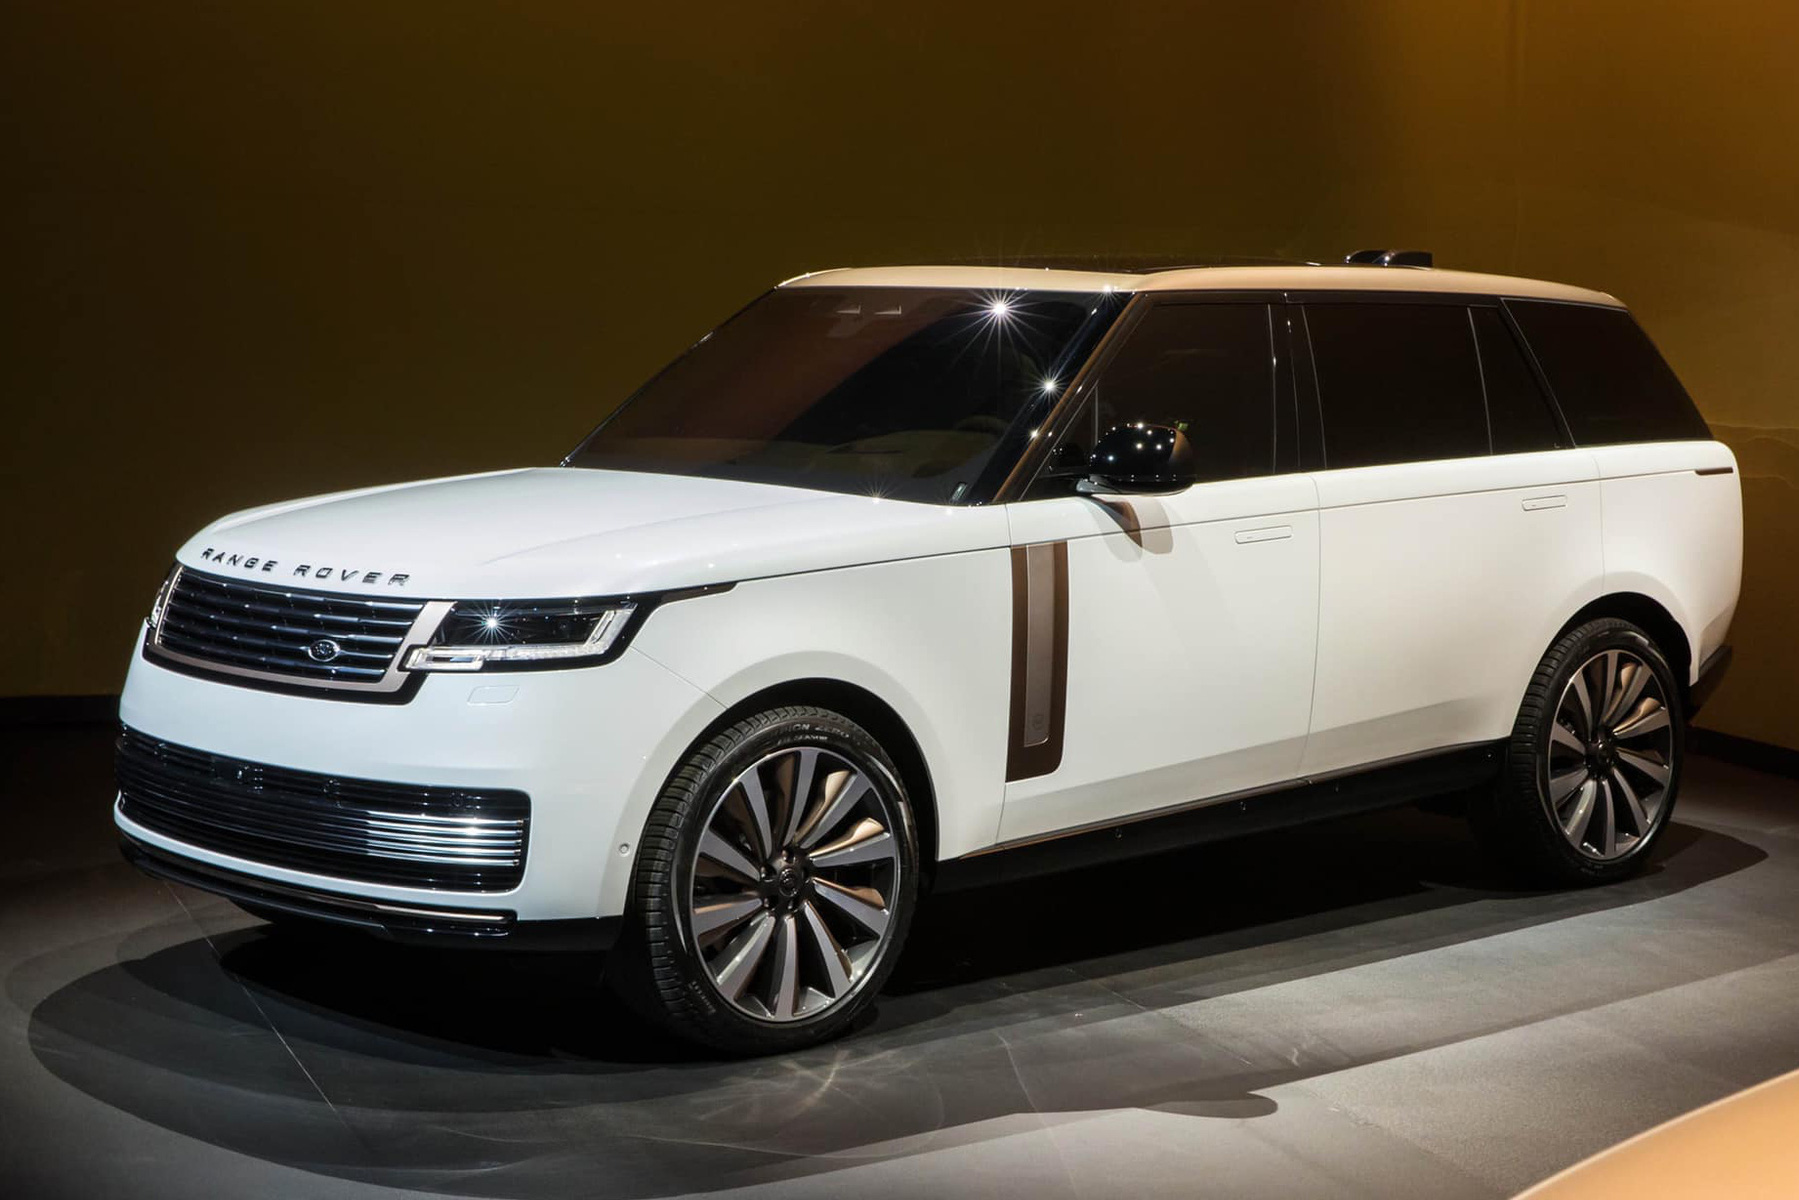 Ra mắt Range Rover 2022: Giá từ 10,879 tỷ đồng, thiết kế đỉnh cao, đã có đại gia Việt chốt đơn cọc